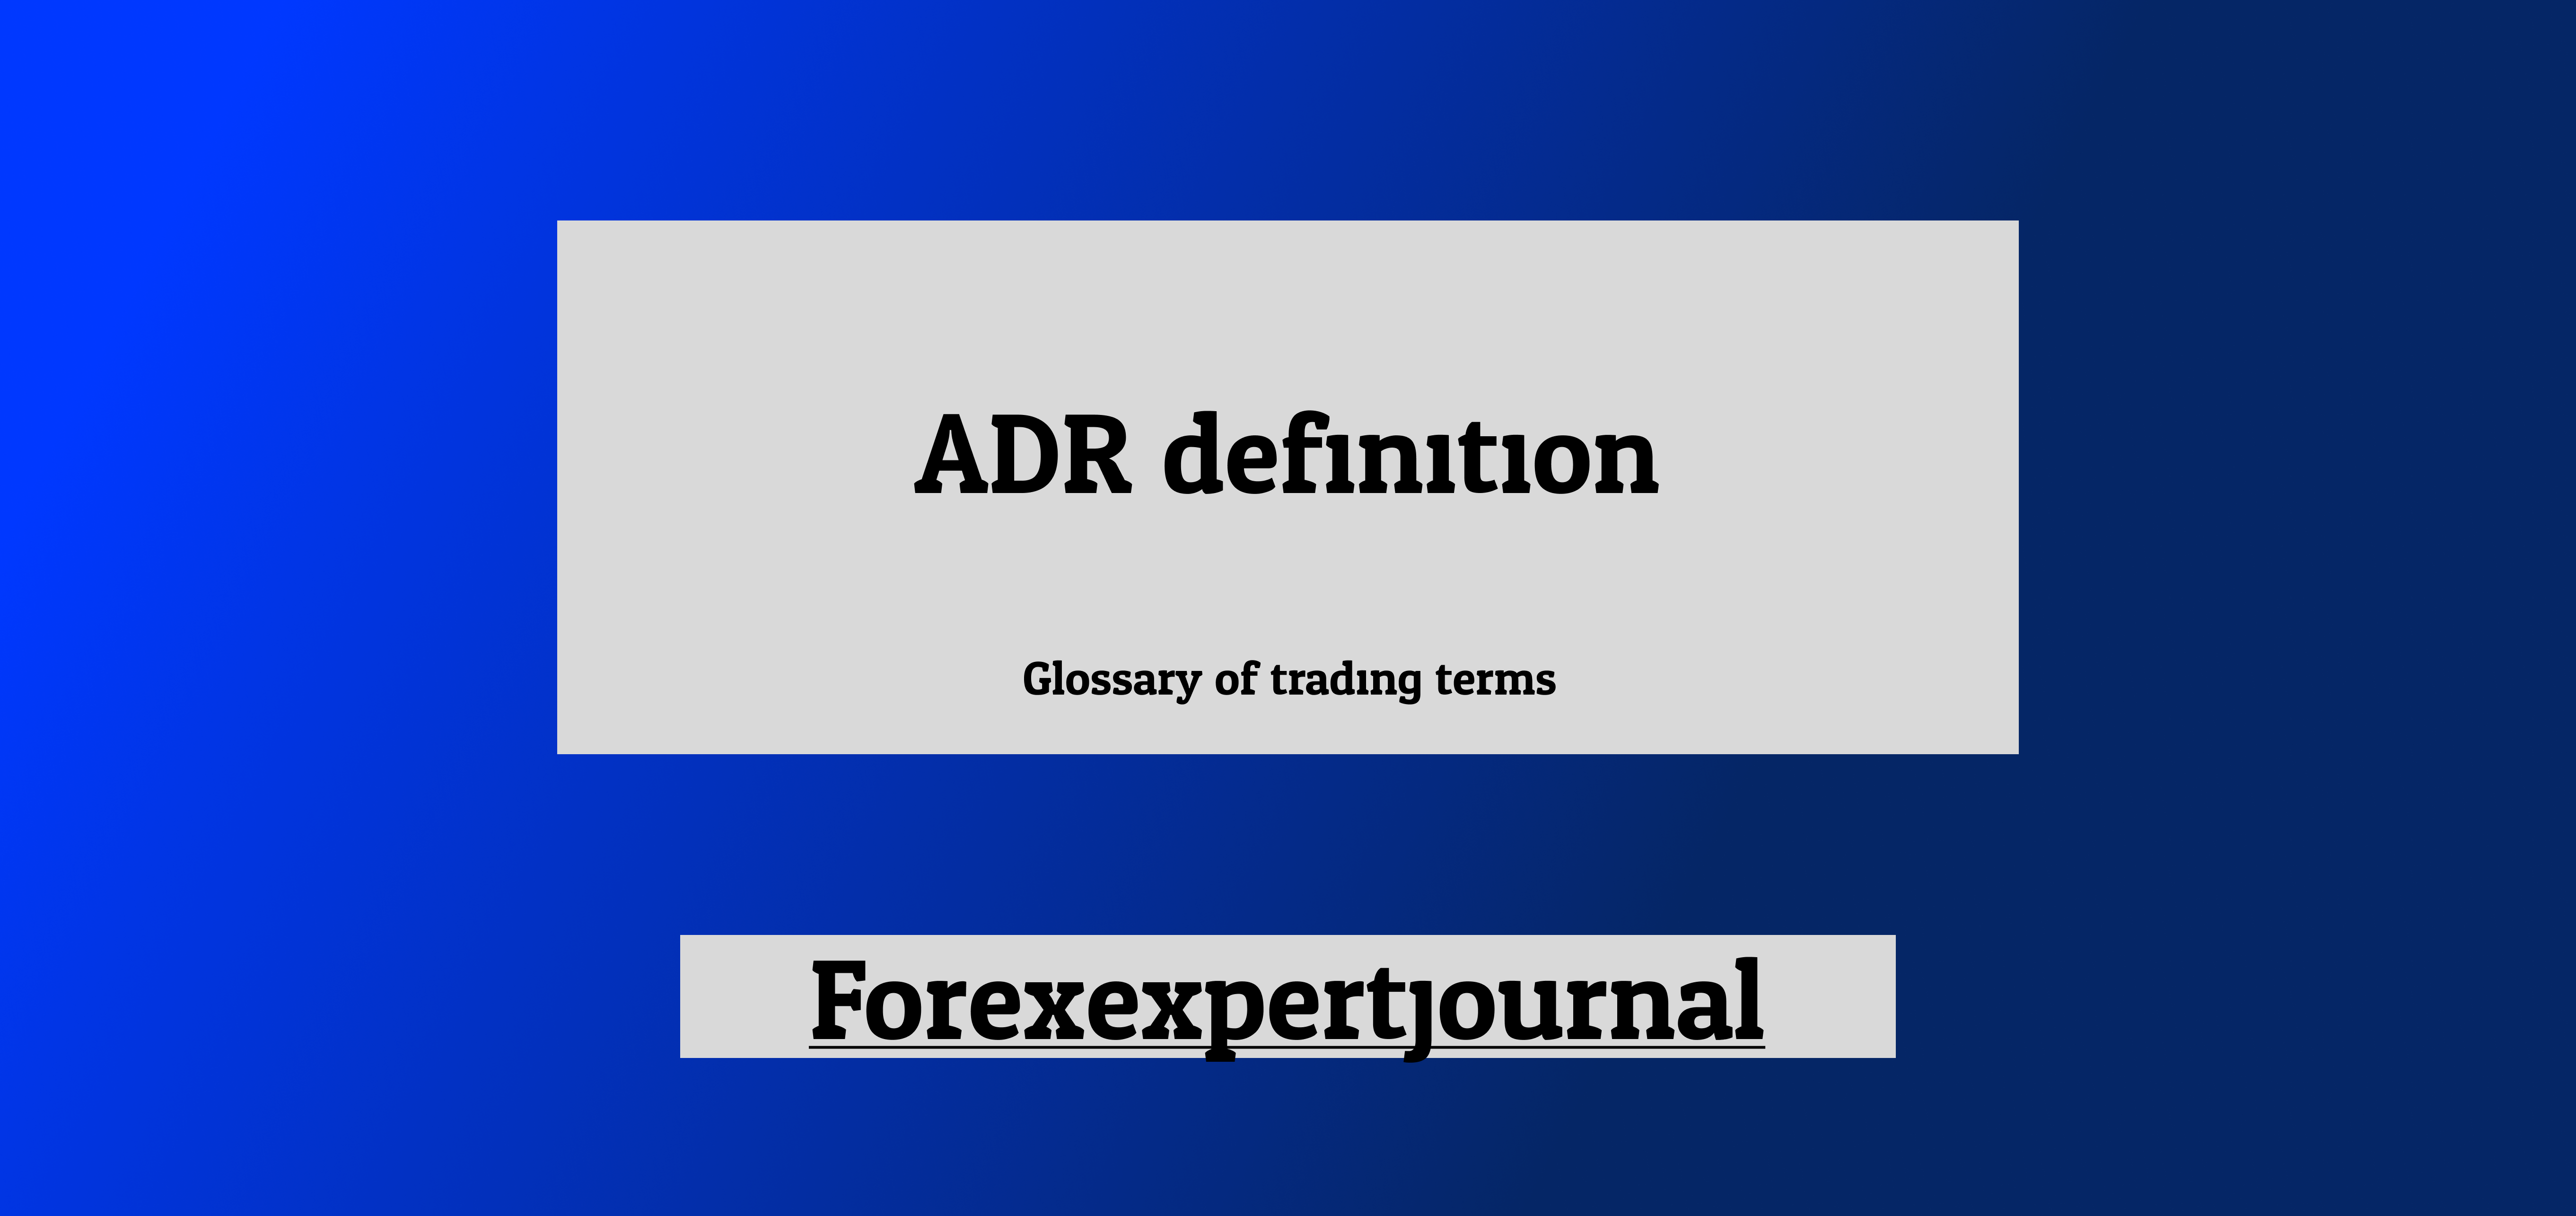 ADR definition